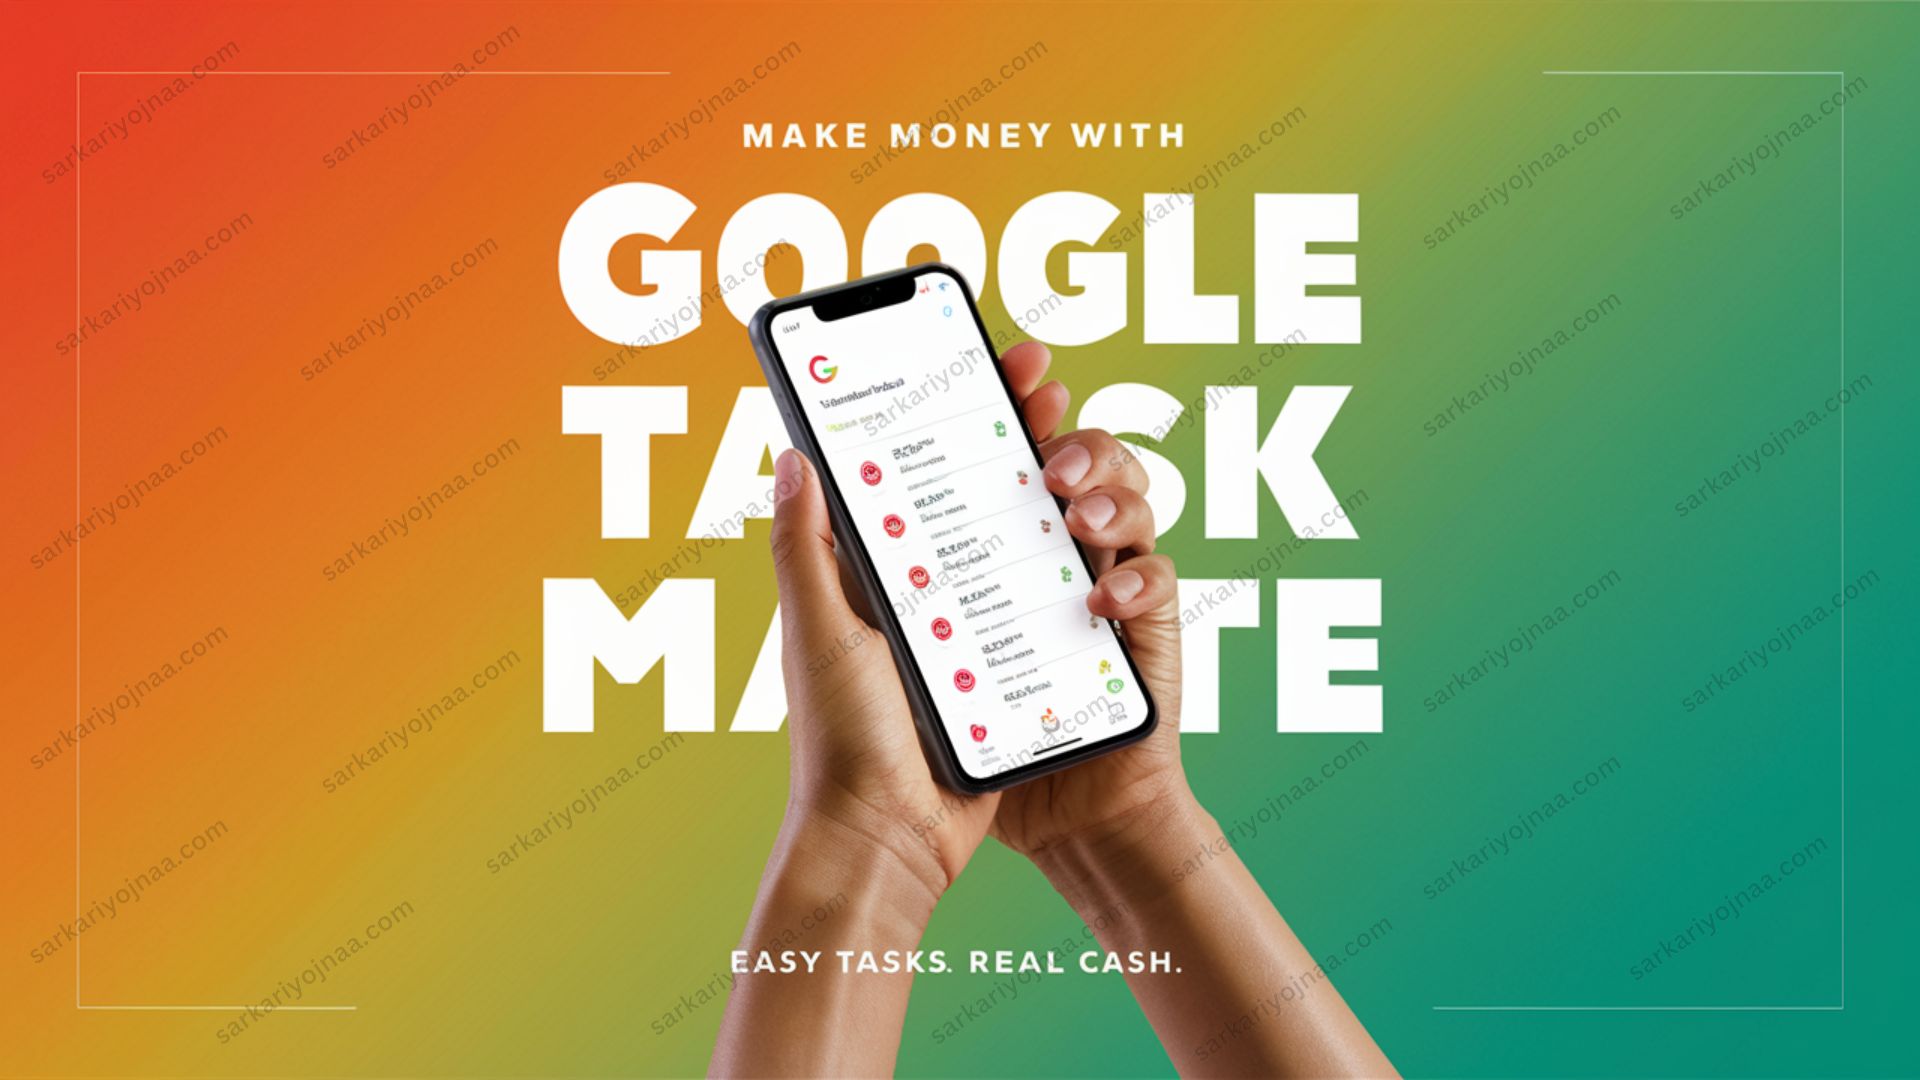 Google Task Mate App Download